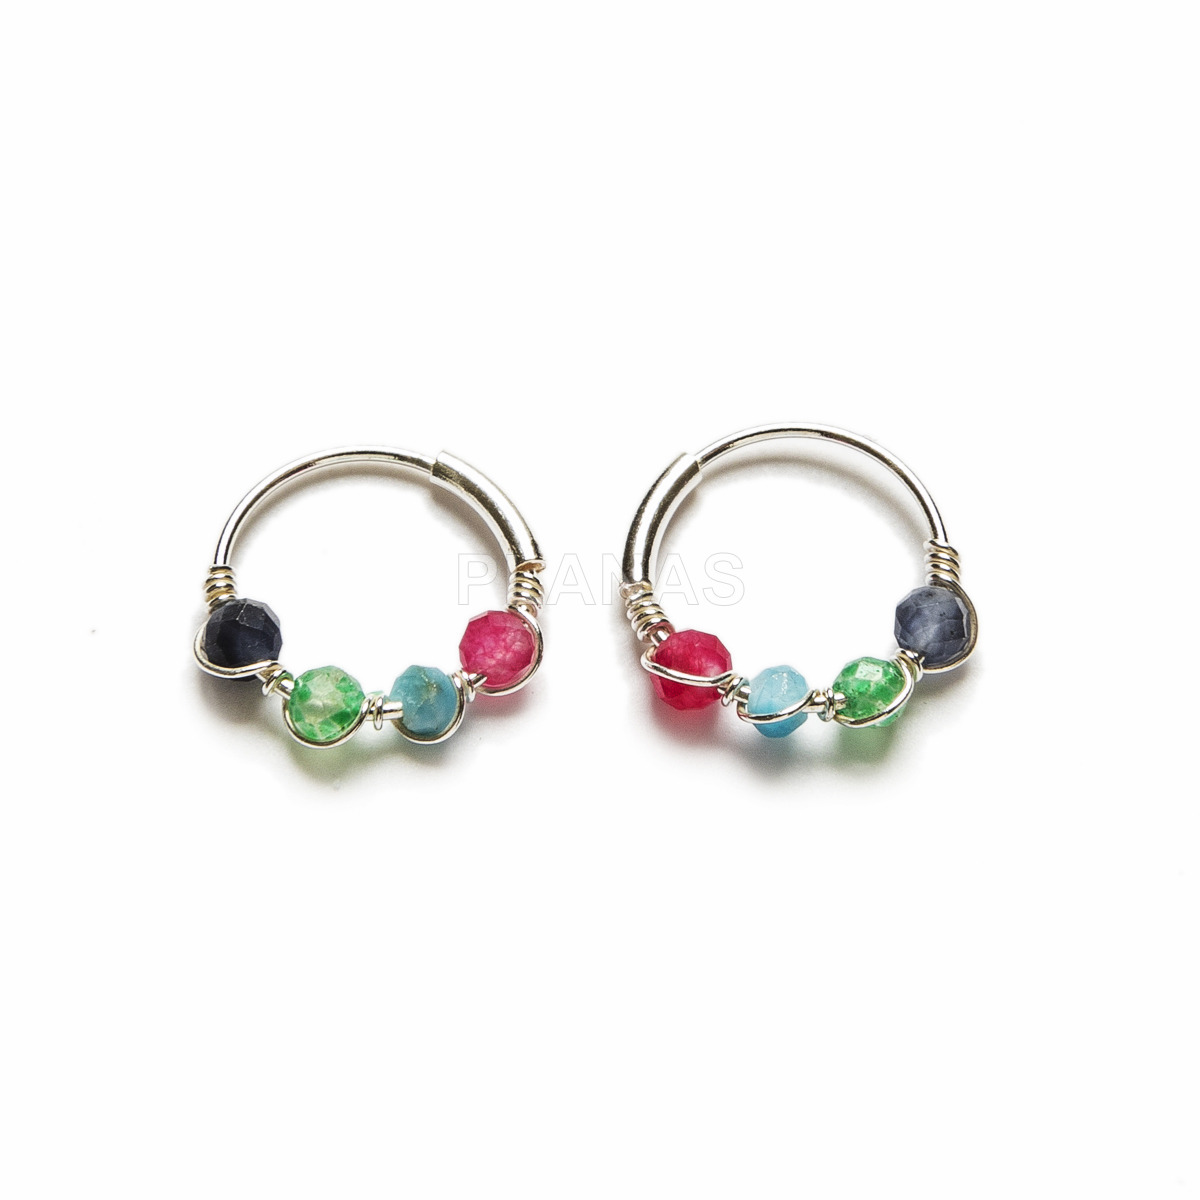 Sterling silver earrings and enamel balls.